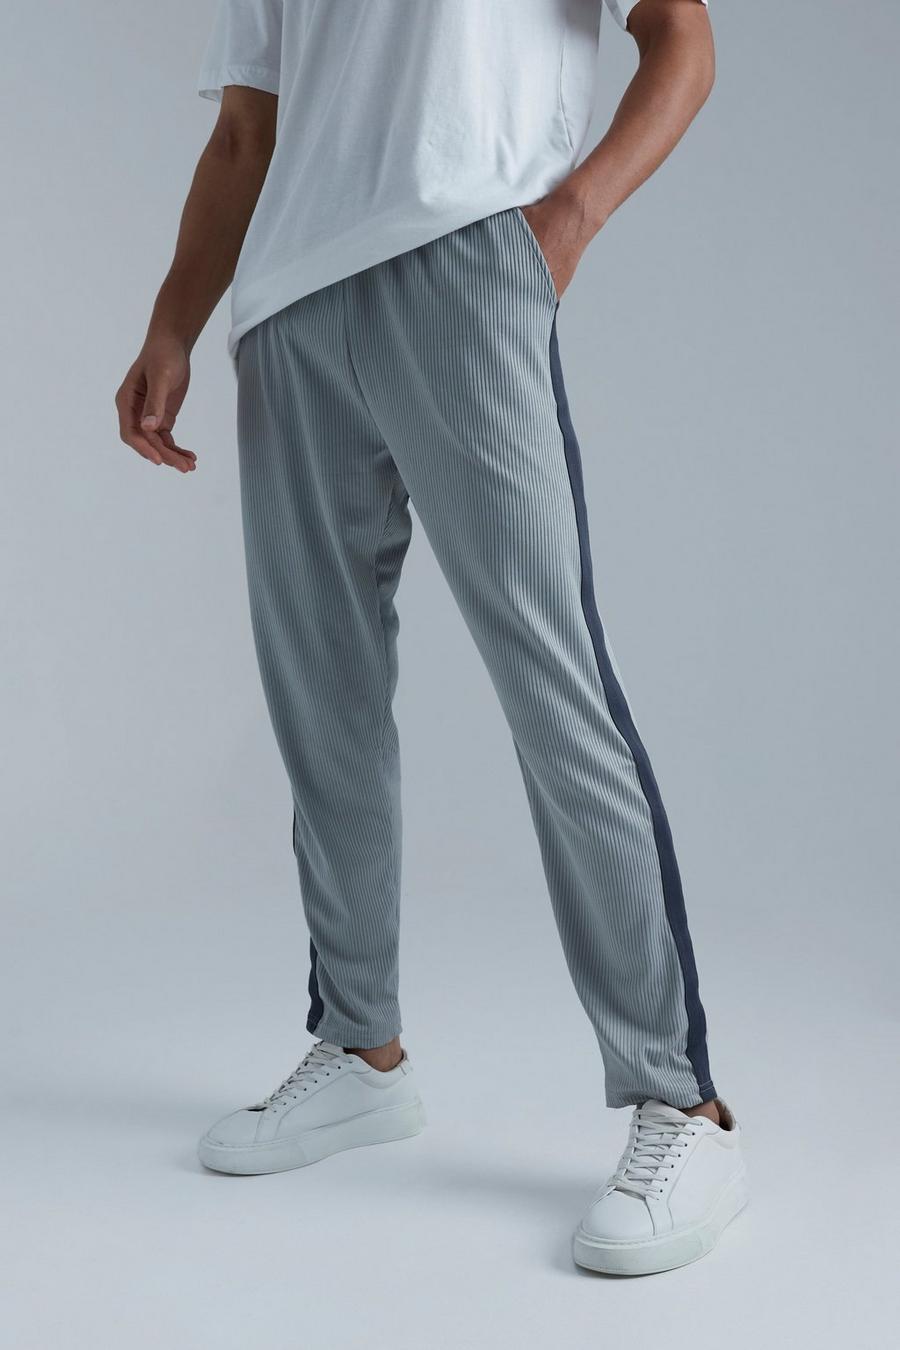 Pantalón deportivo Tall pesquero plisado ajustado con cinta, Grey image number 1